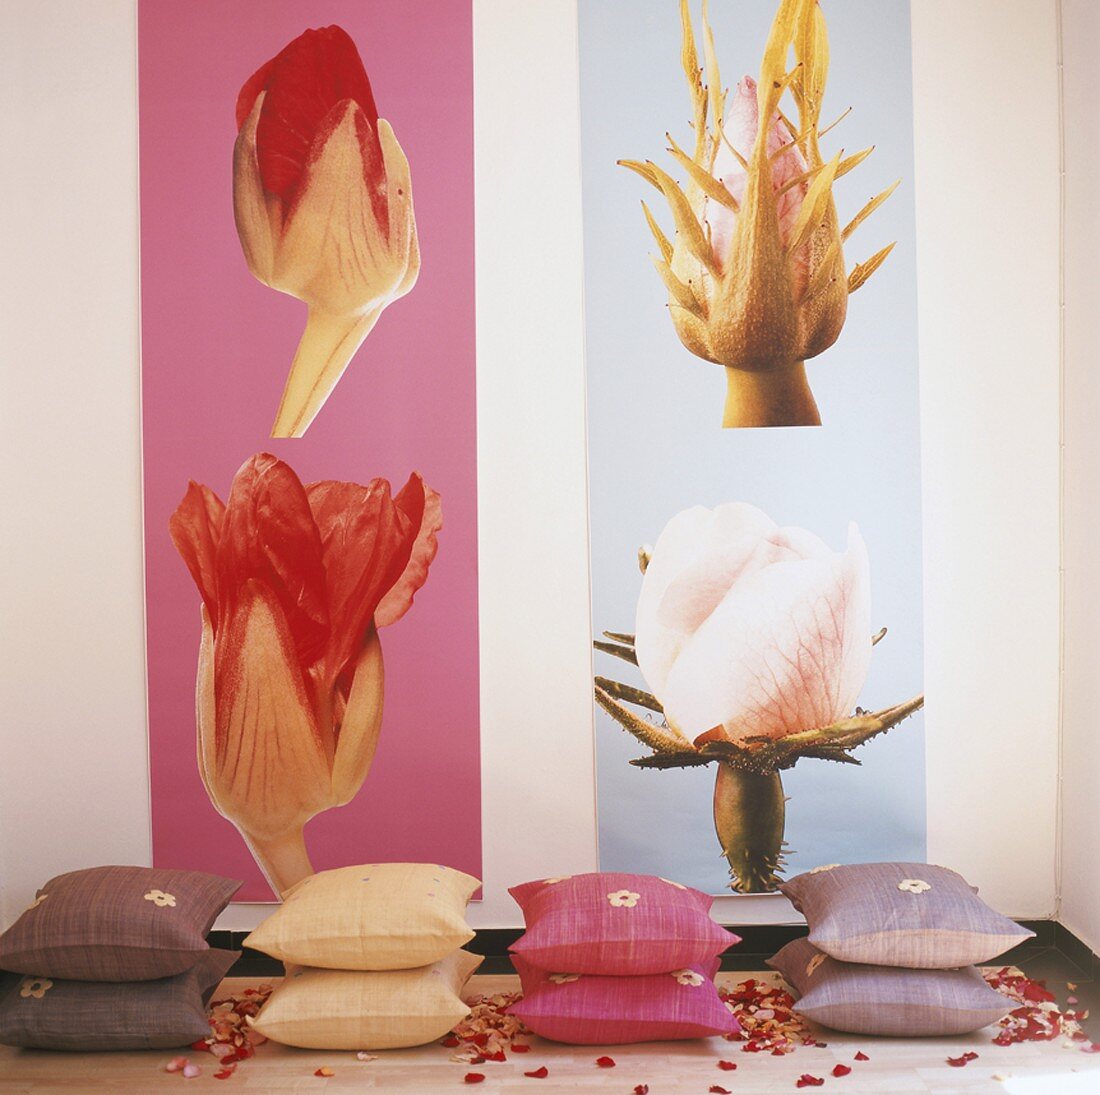 Gestapelte Zierkissen vor Bilderwand mit Blütenmotiven